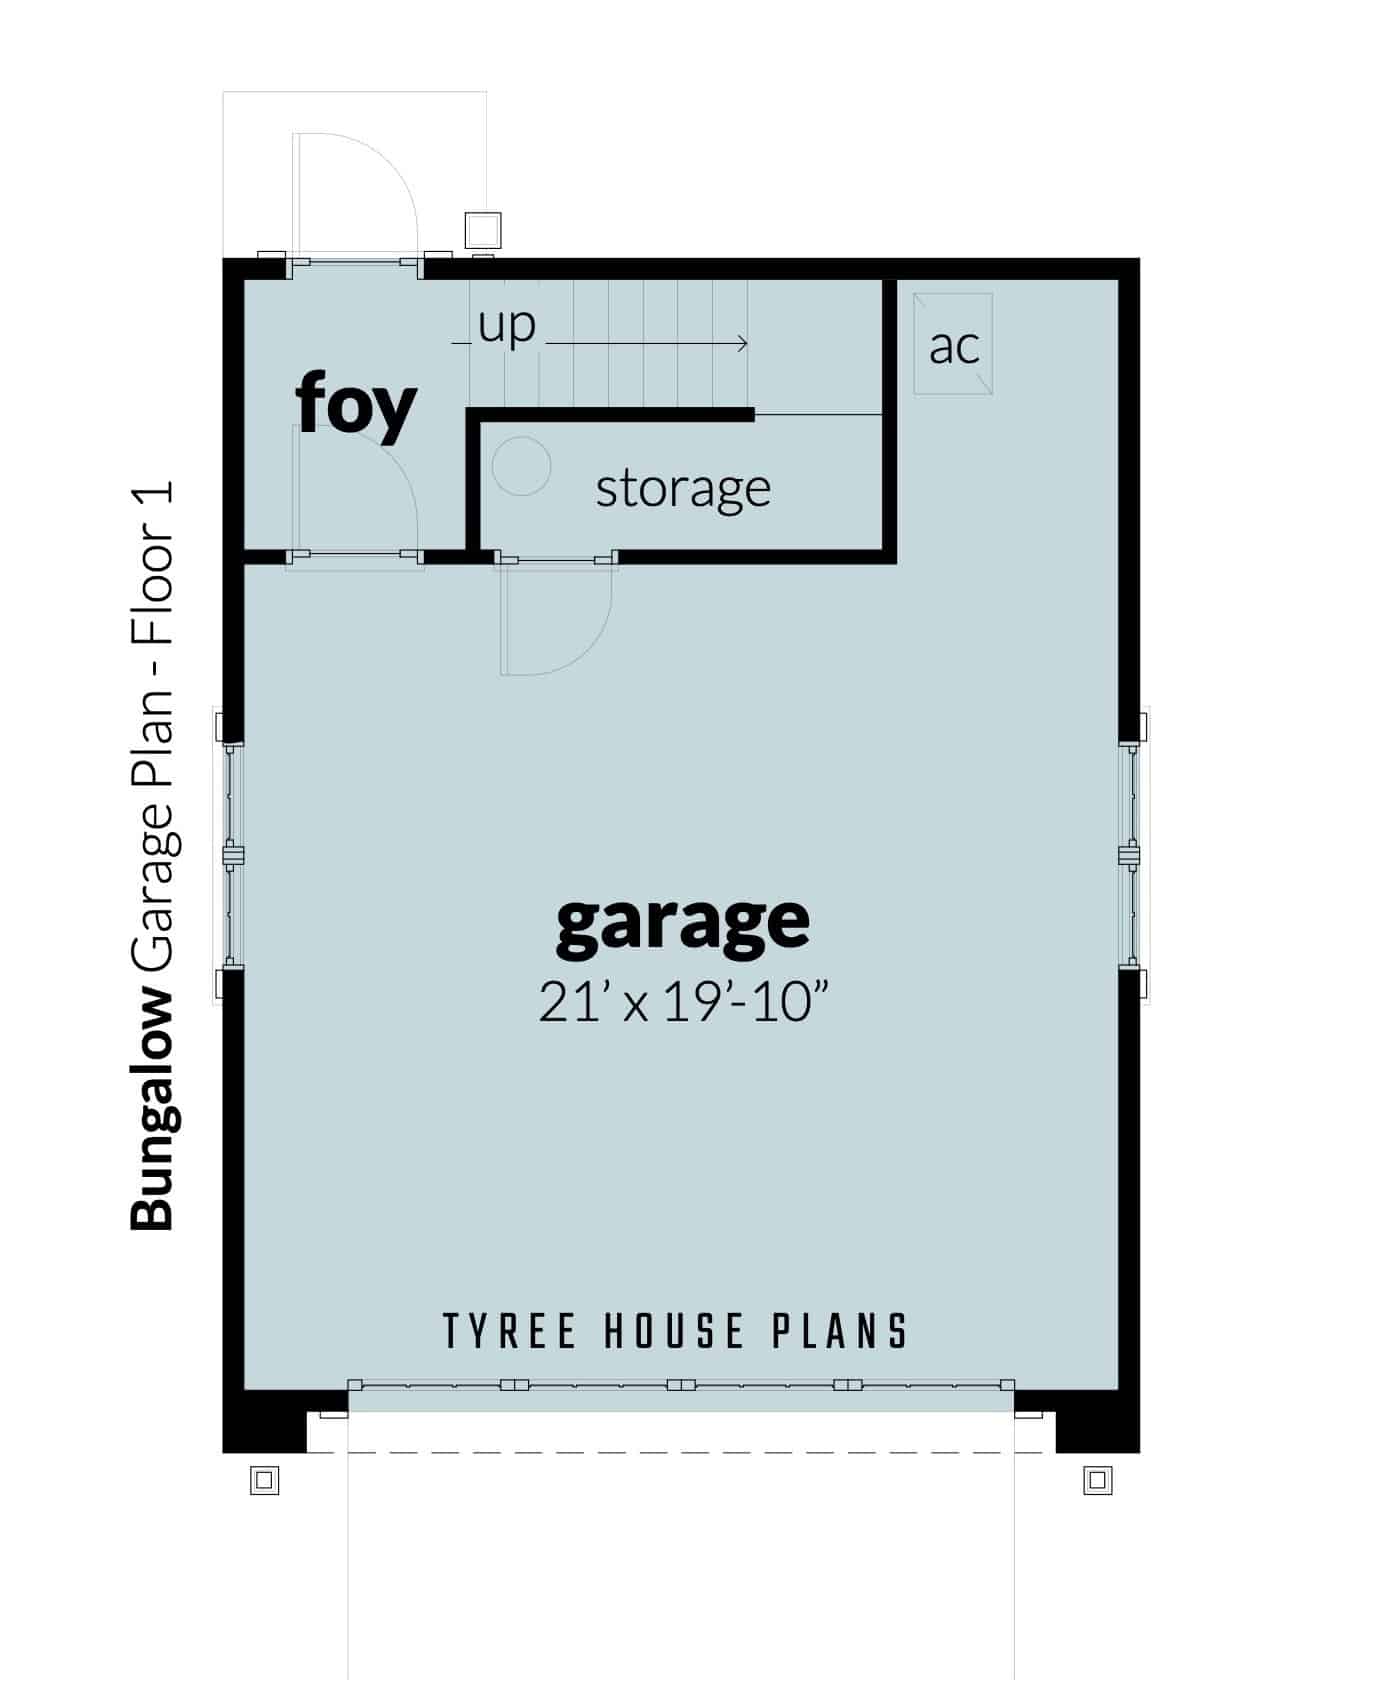 Bungalow Garage Plan - Tyree House Plans